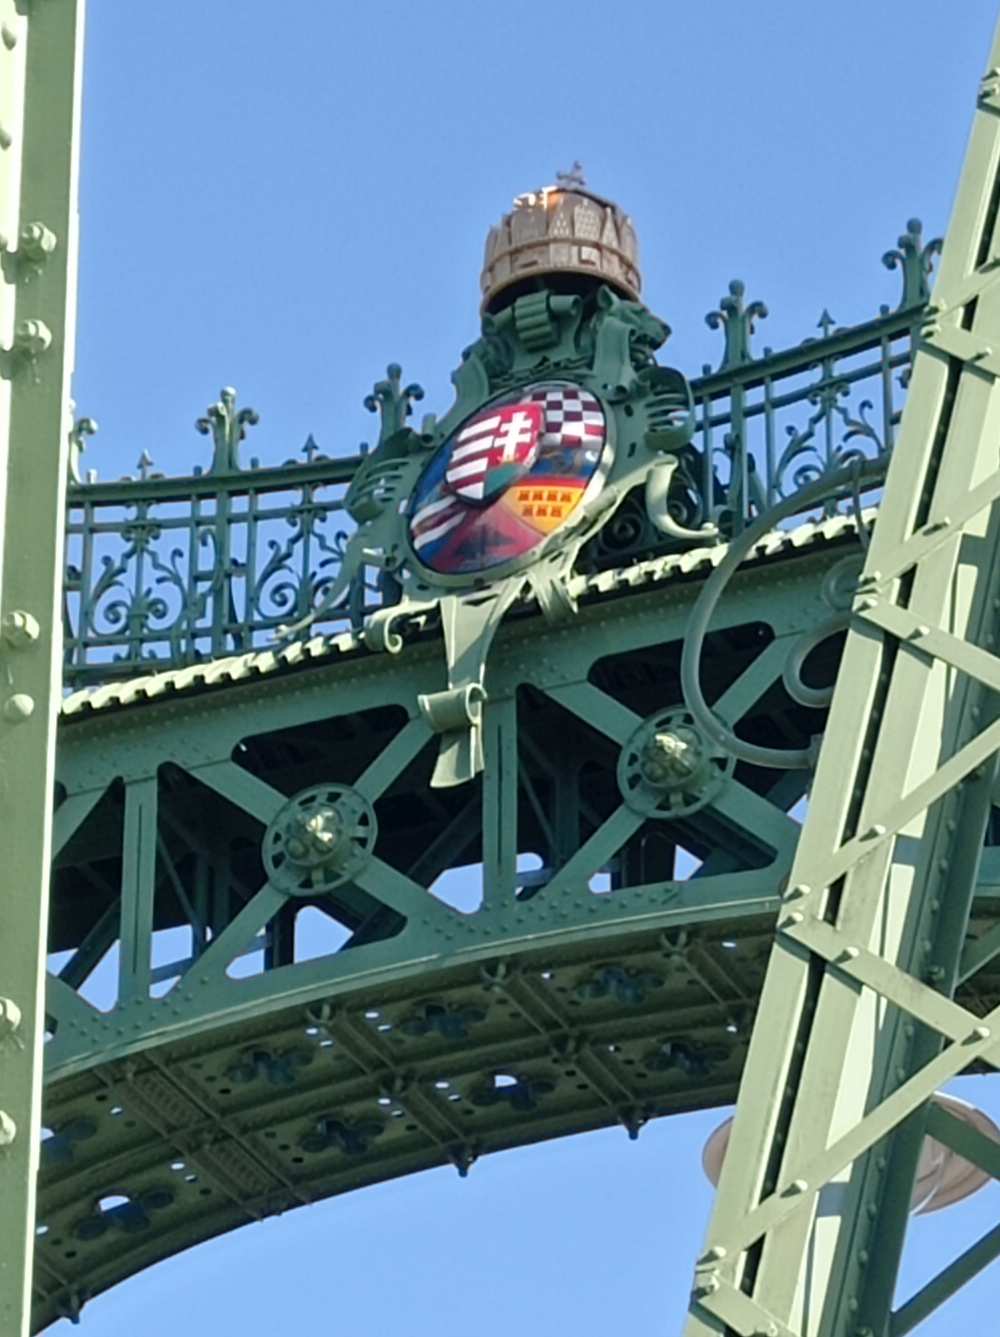 A híd egyik kapuzata a magyar címerrel és a koronával. Fotó: A szerző